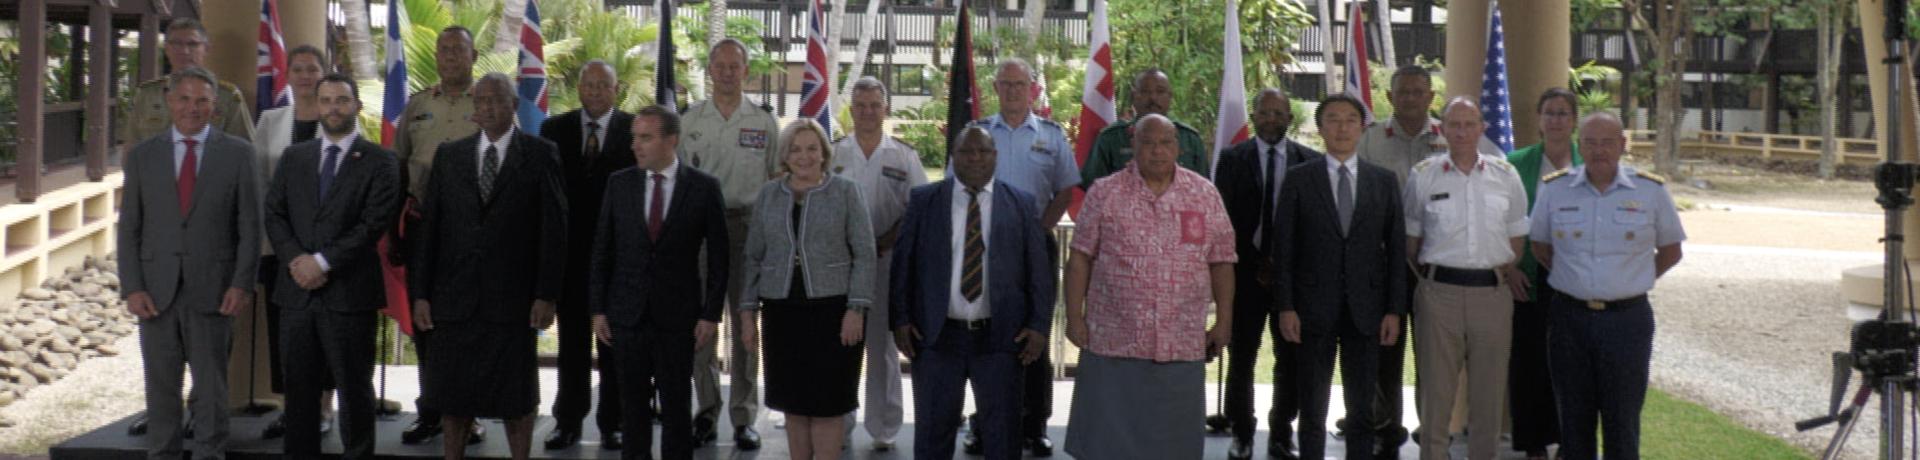 Sommet ministres des armées Pacifique Sud CPAS Nouméa ©Caledonia